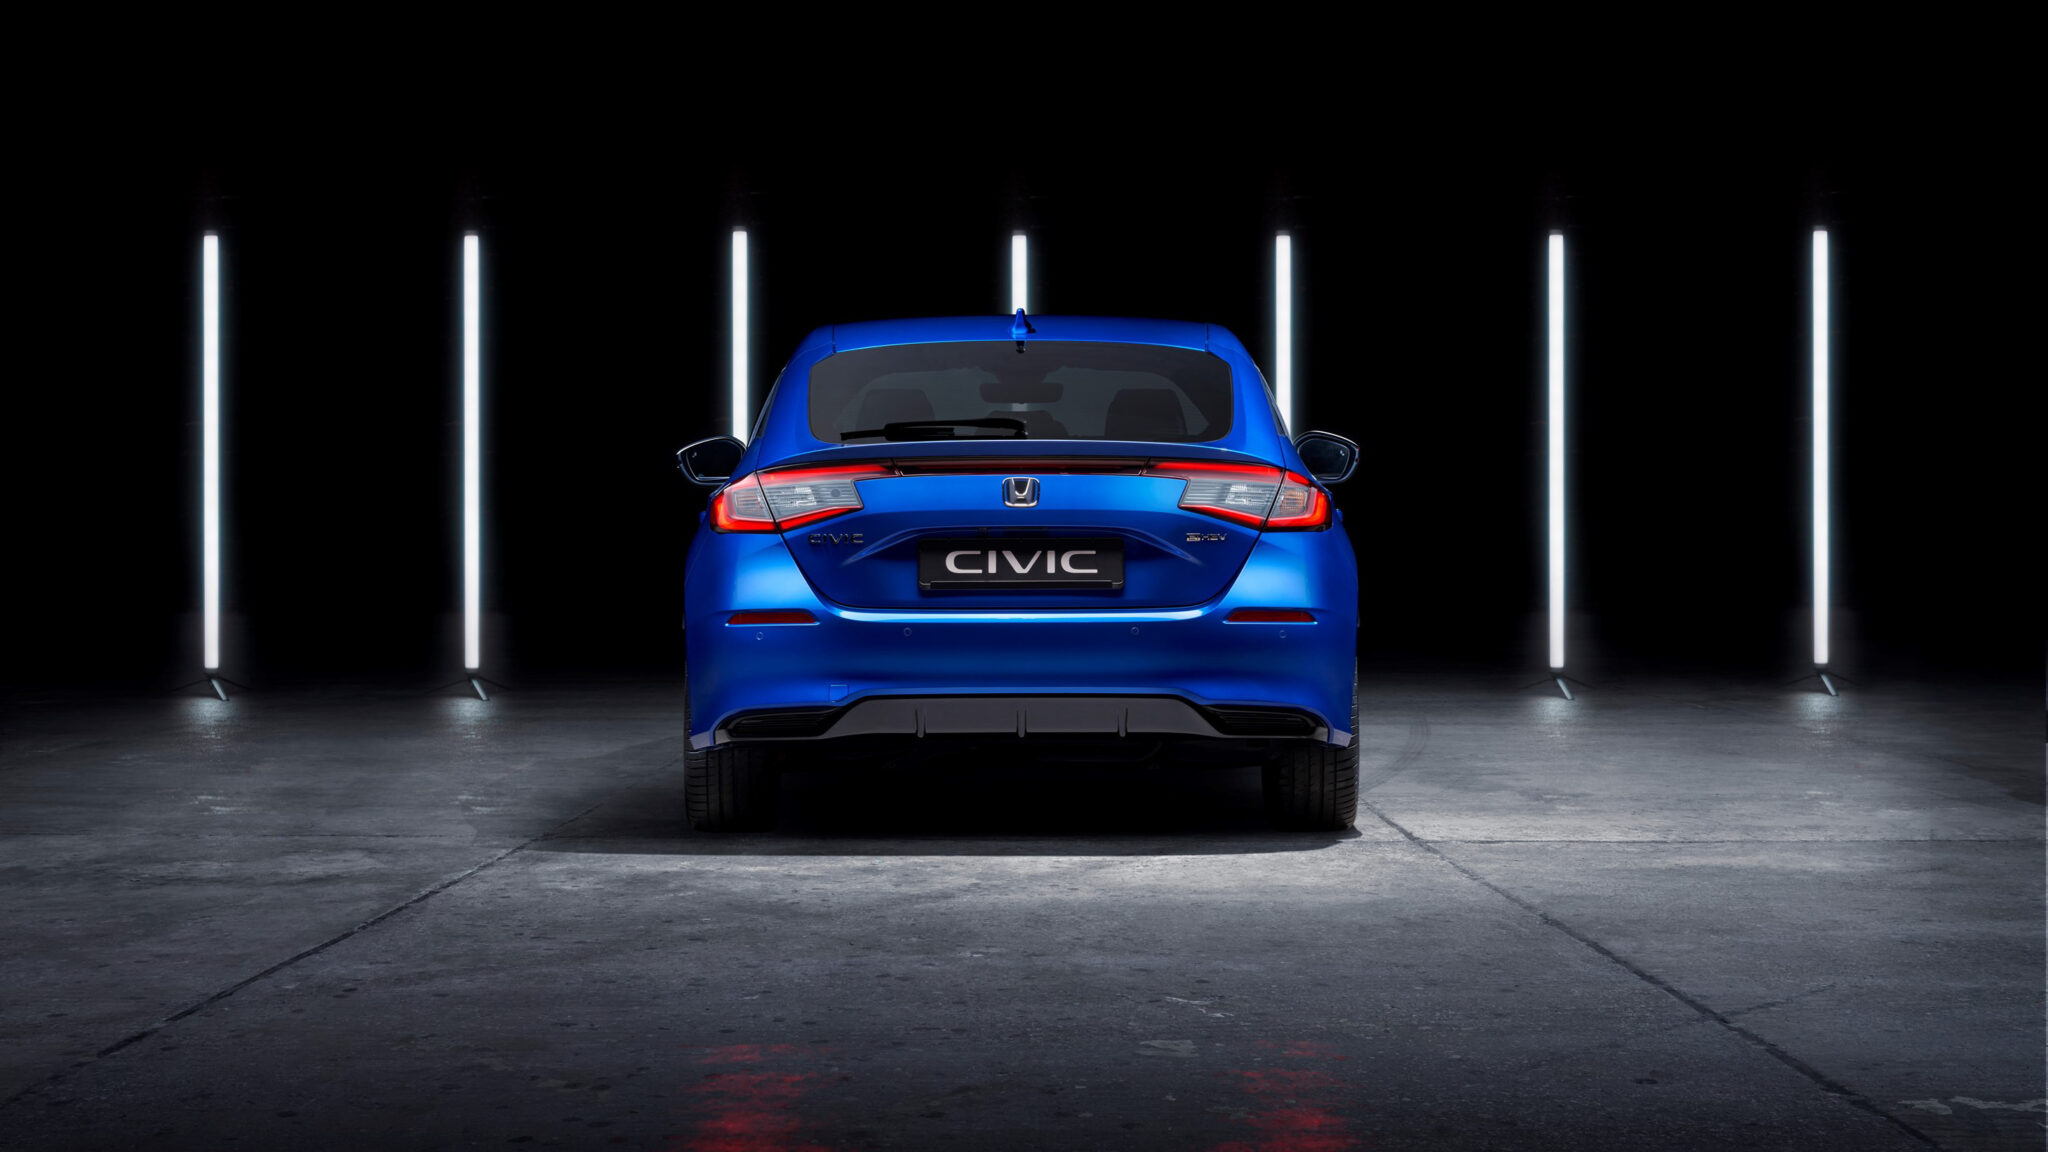 Honda's bewezen e:HEV-aandrijftechnologie (hybride elektrisch voertuig) wordt als standaard geleverd in de nieuwe Civic